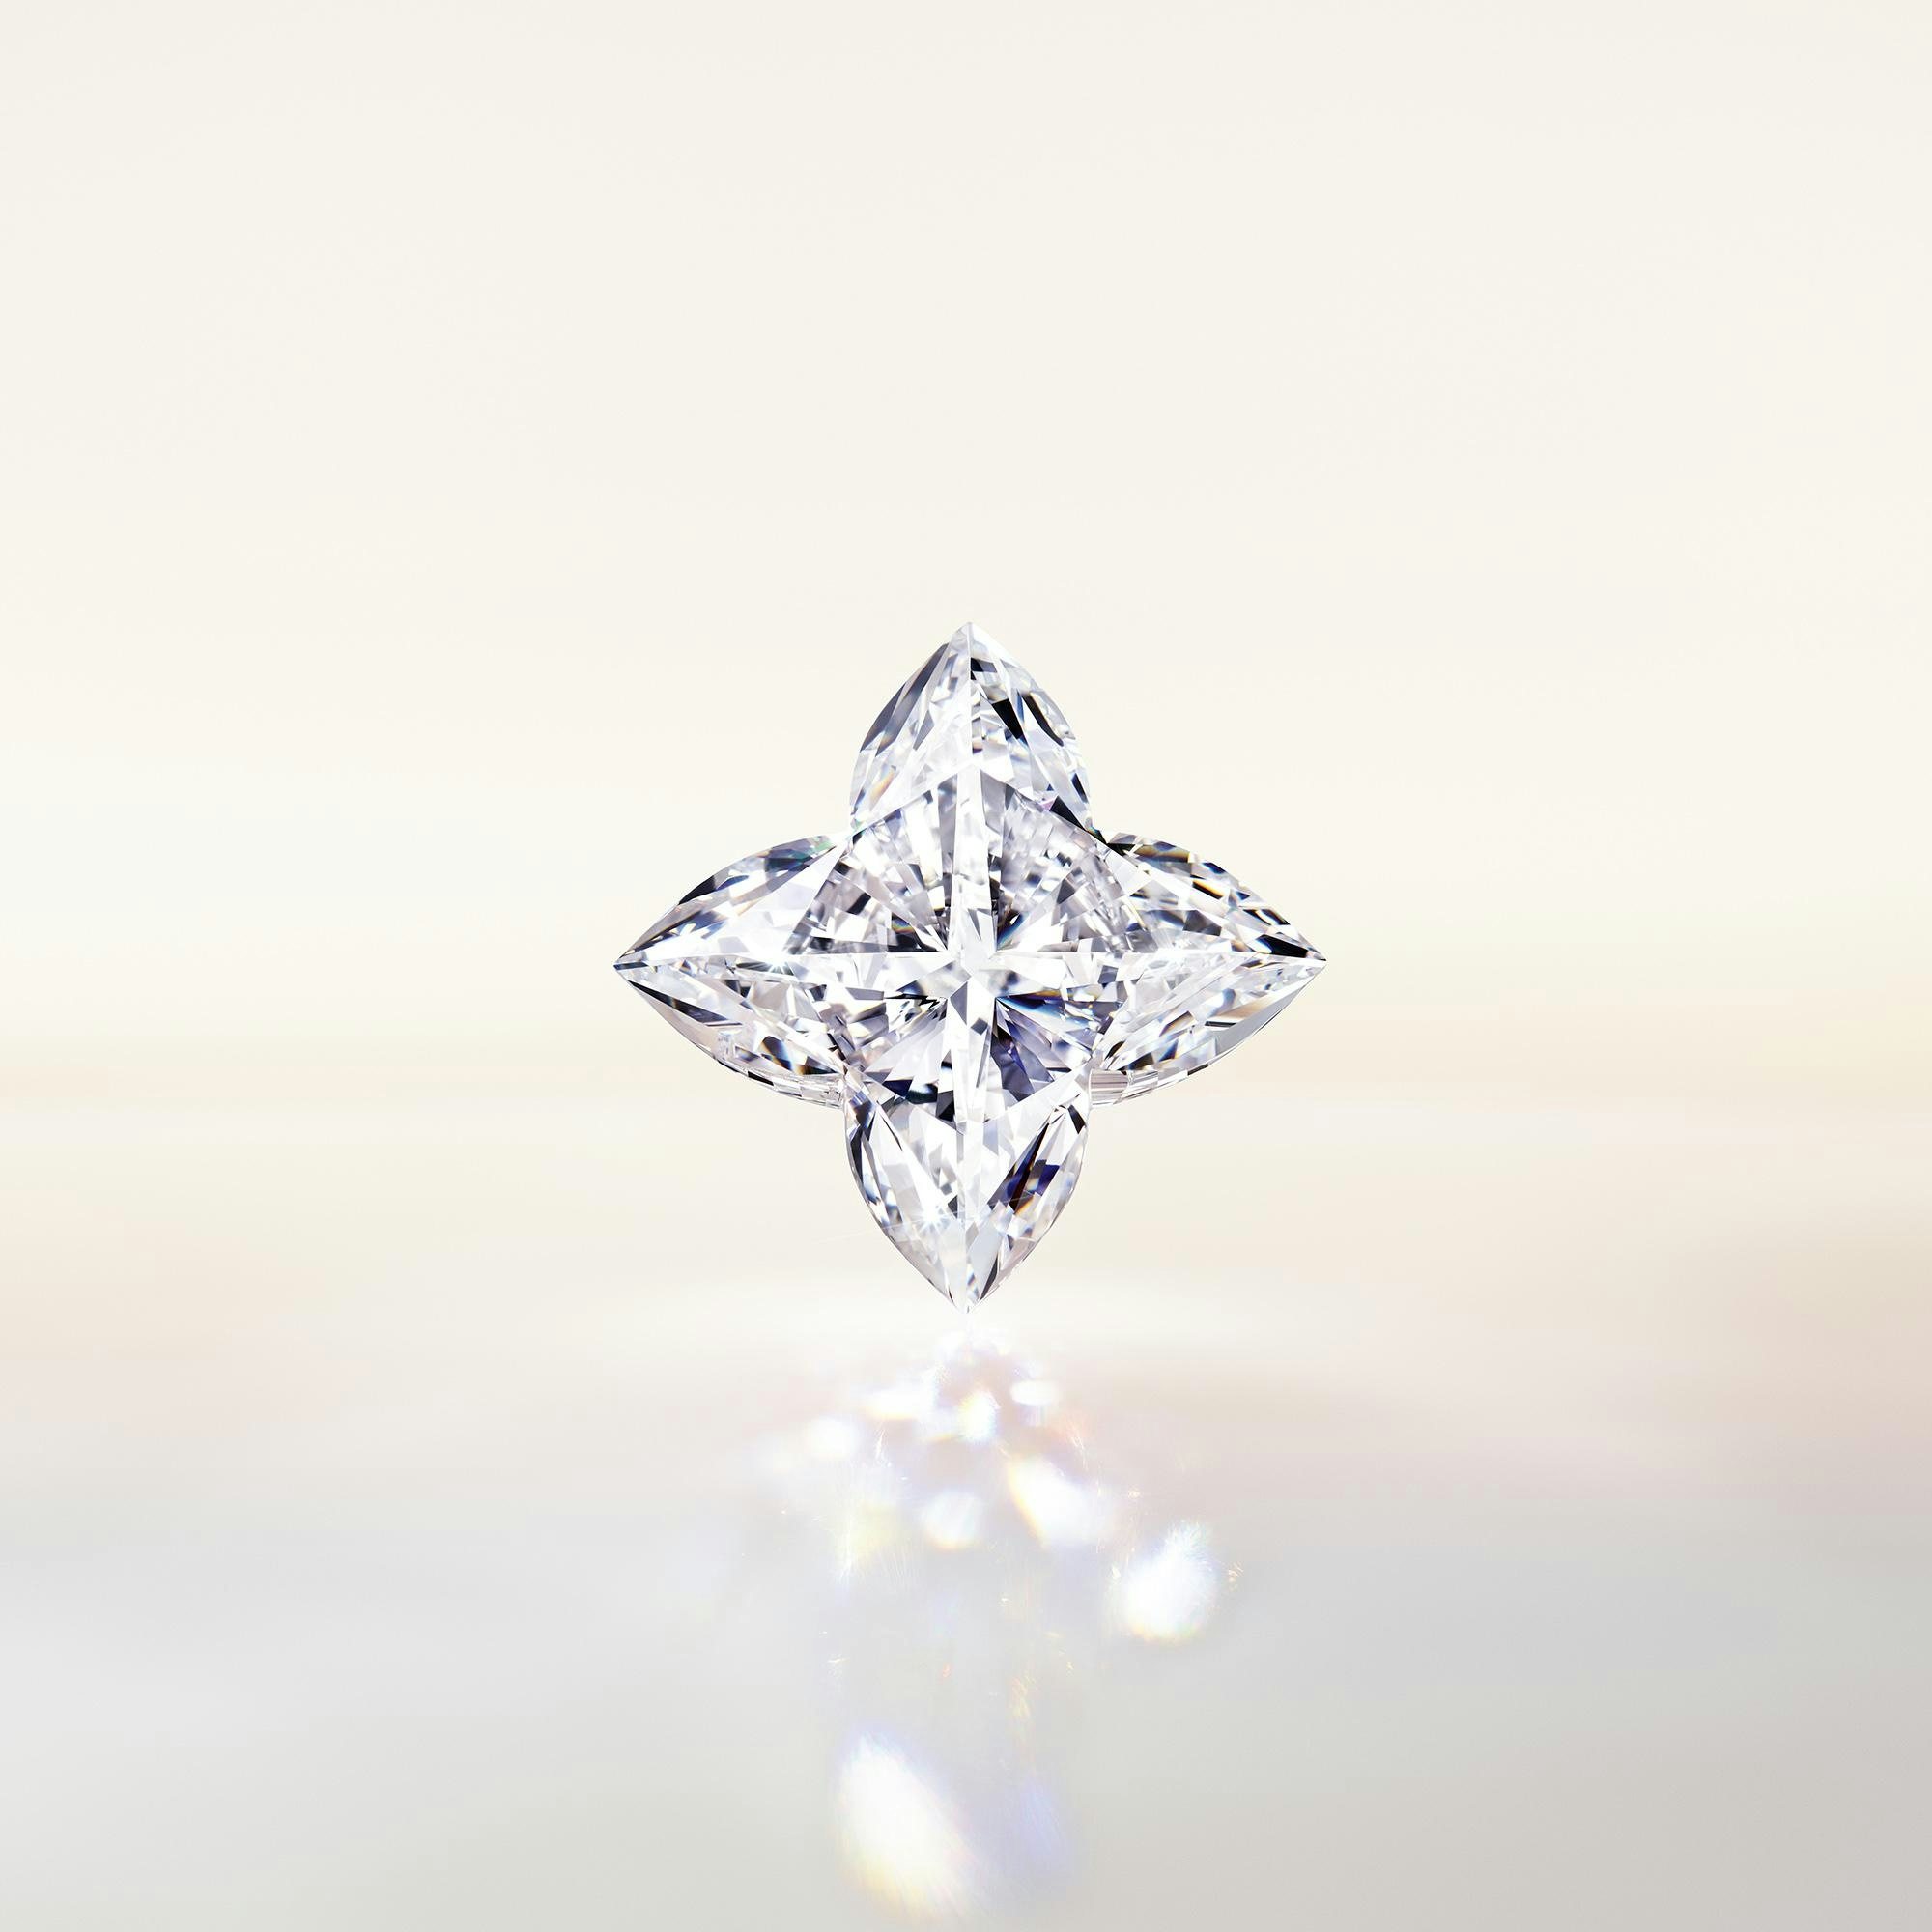 Louis Vuitton je za svoju novu kolekciju LV Diamonds primijenio tehnologiju digitalnih blizanaca baziranu na blockchainu.  Fotografija: Louis Vuitton